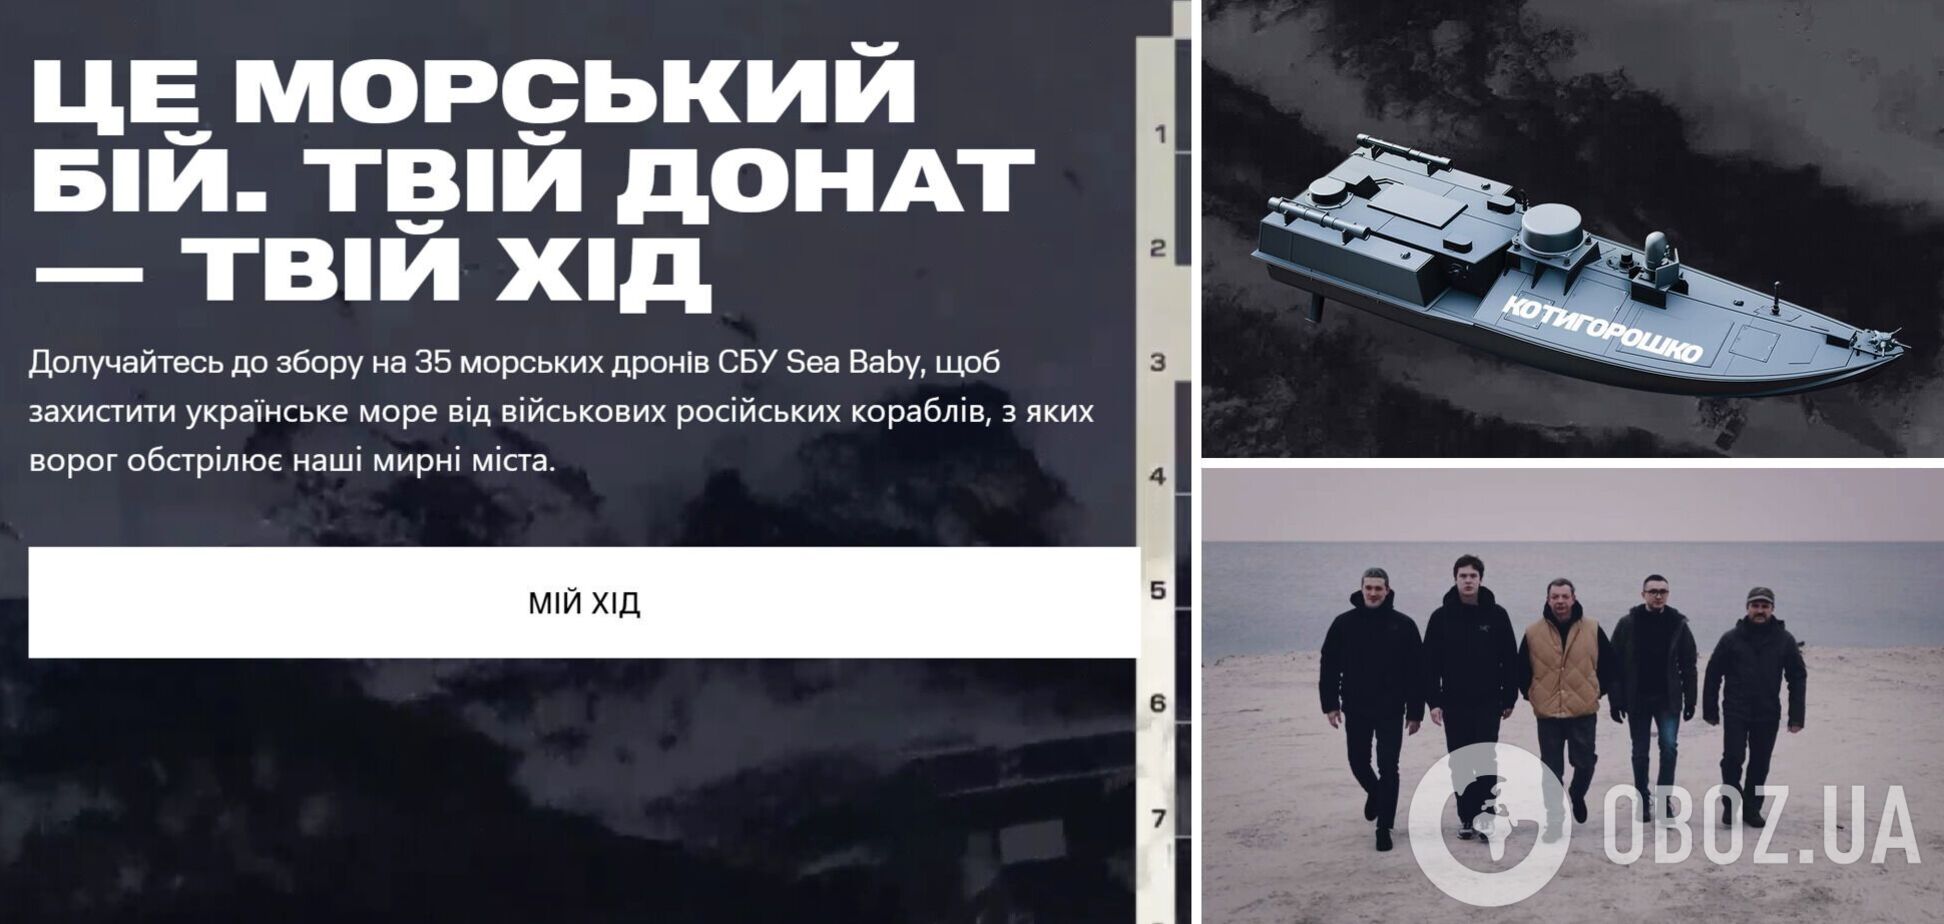 Украинцев призвали присоединиться к сбору на 35 морских дронов СБУ Sea Baby: операции с ними изменили расклад сил в море